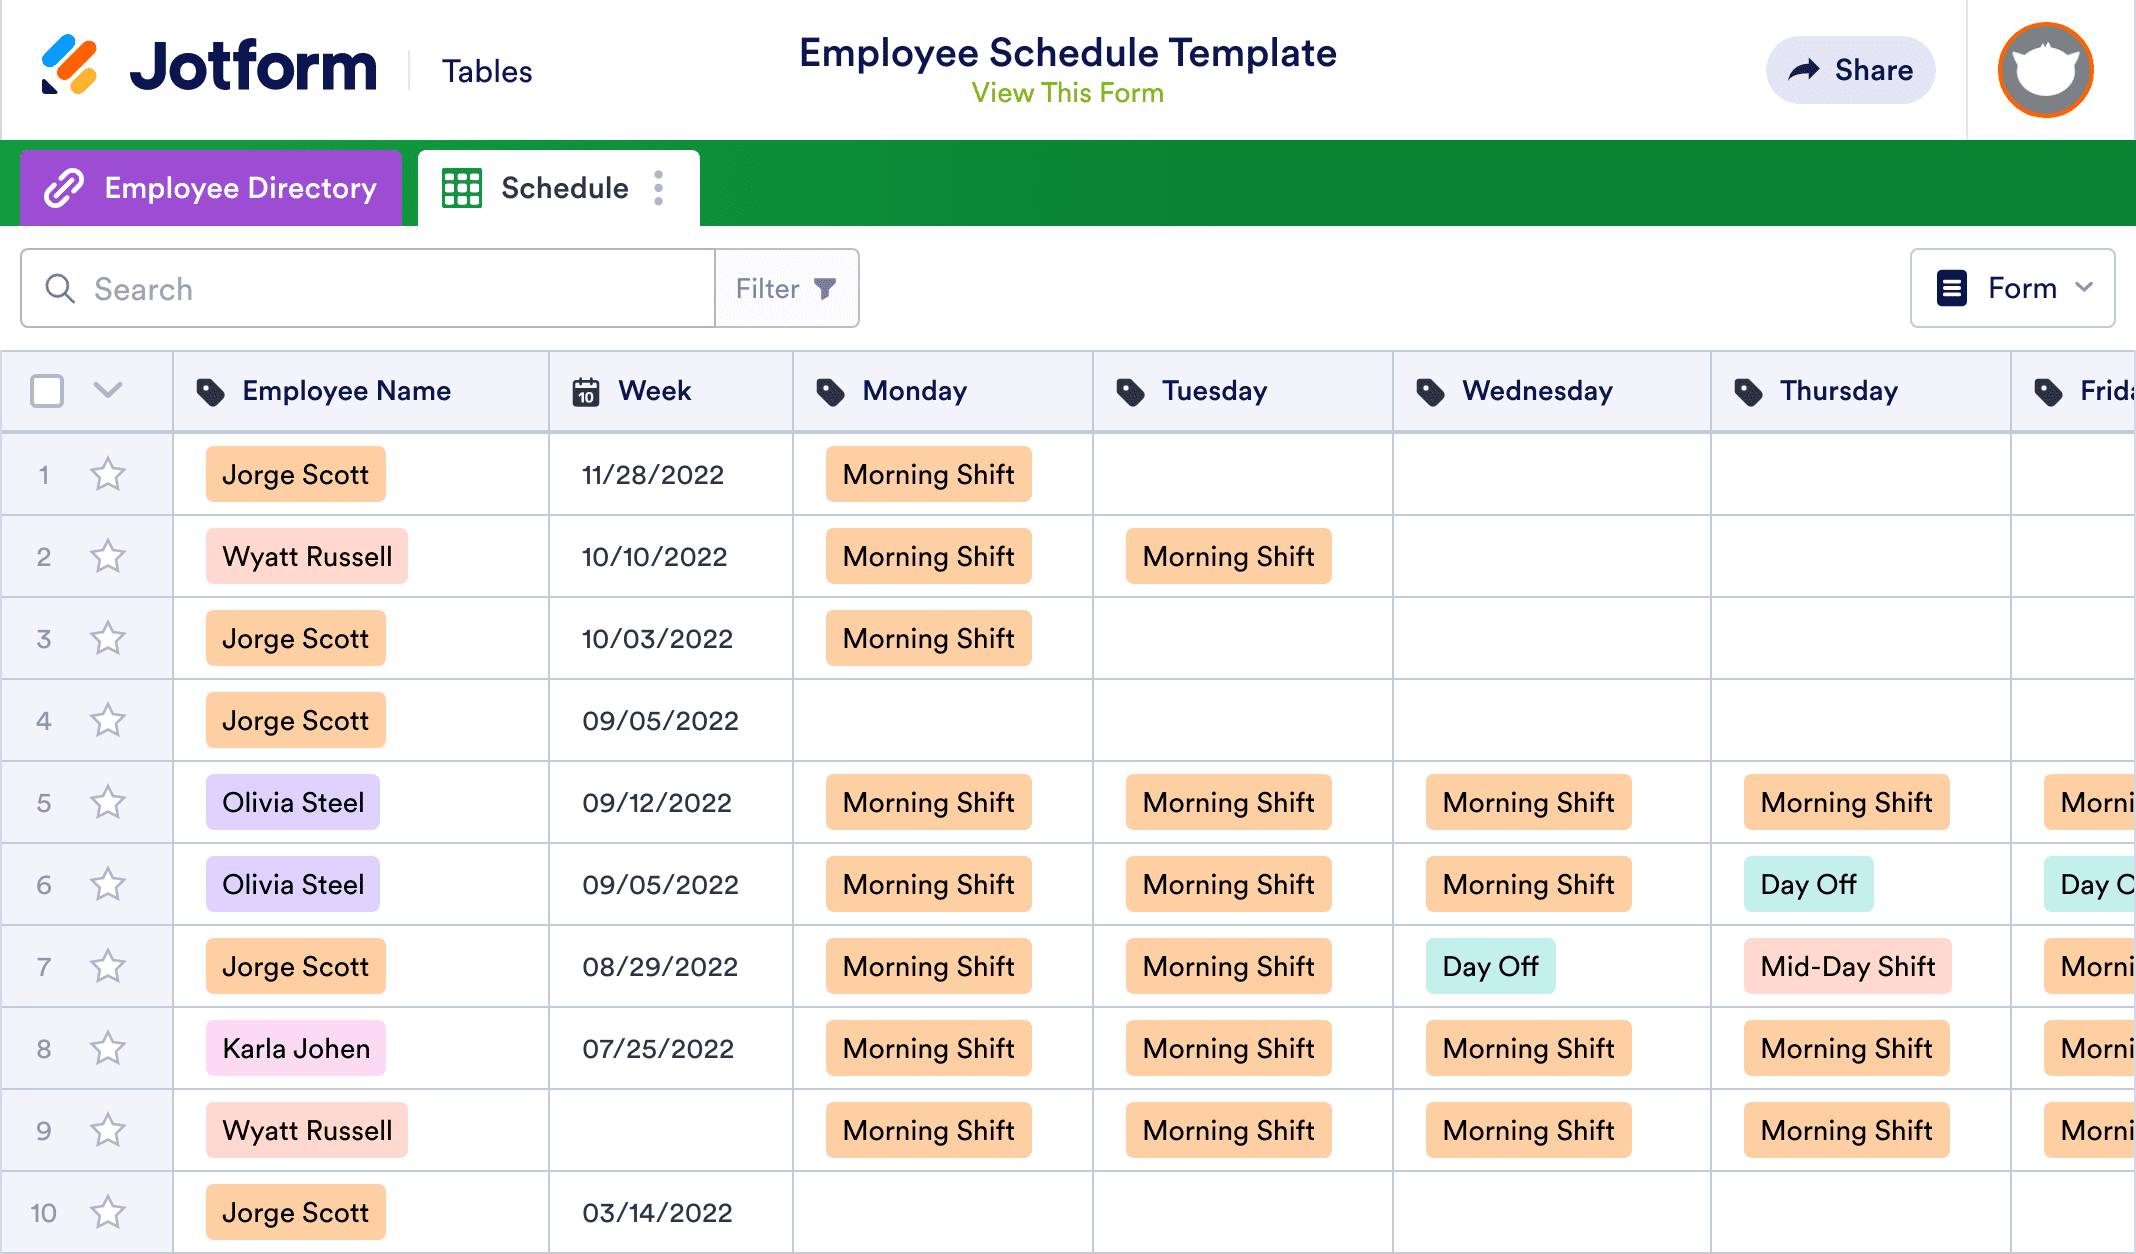 Employee Schedule Template Jotform Tables